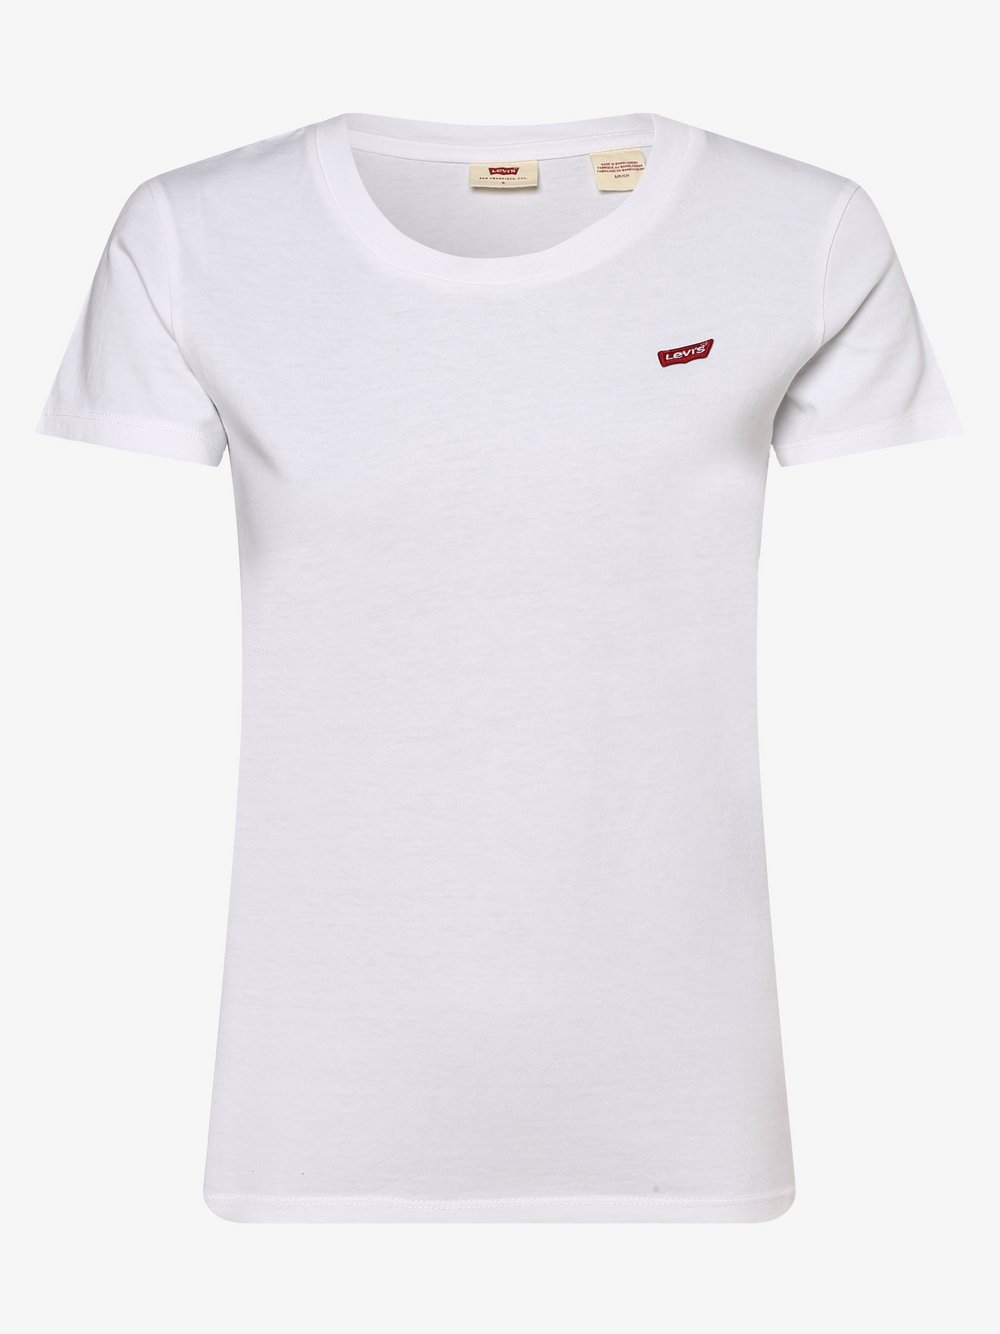 Levi's T-Shirt Rabatt 69 % Weiß S DAMEN Hemden & T-Shirts Casual 